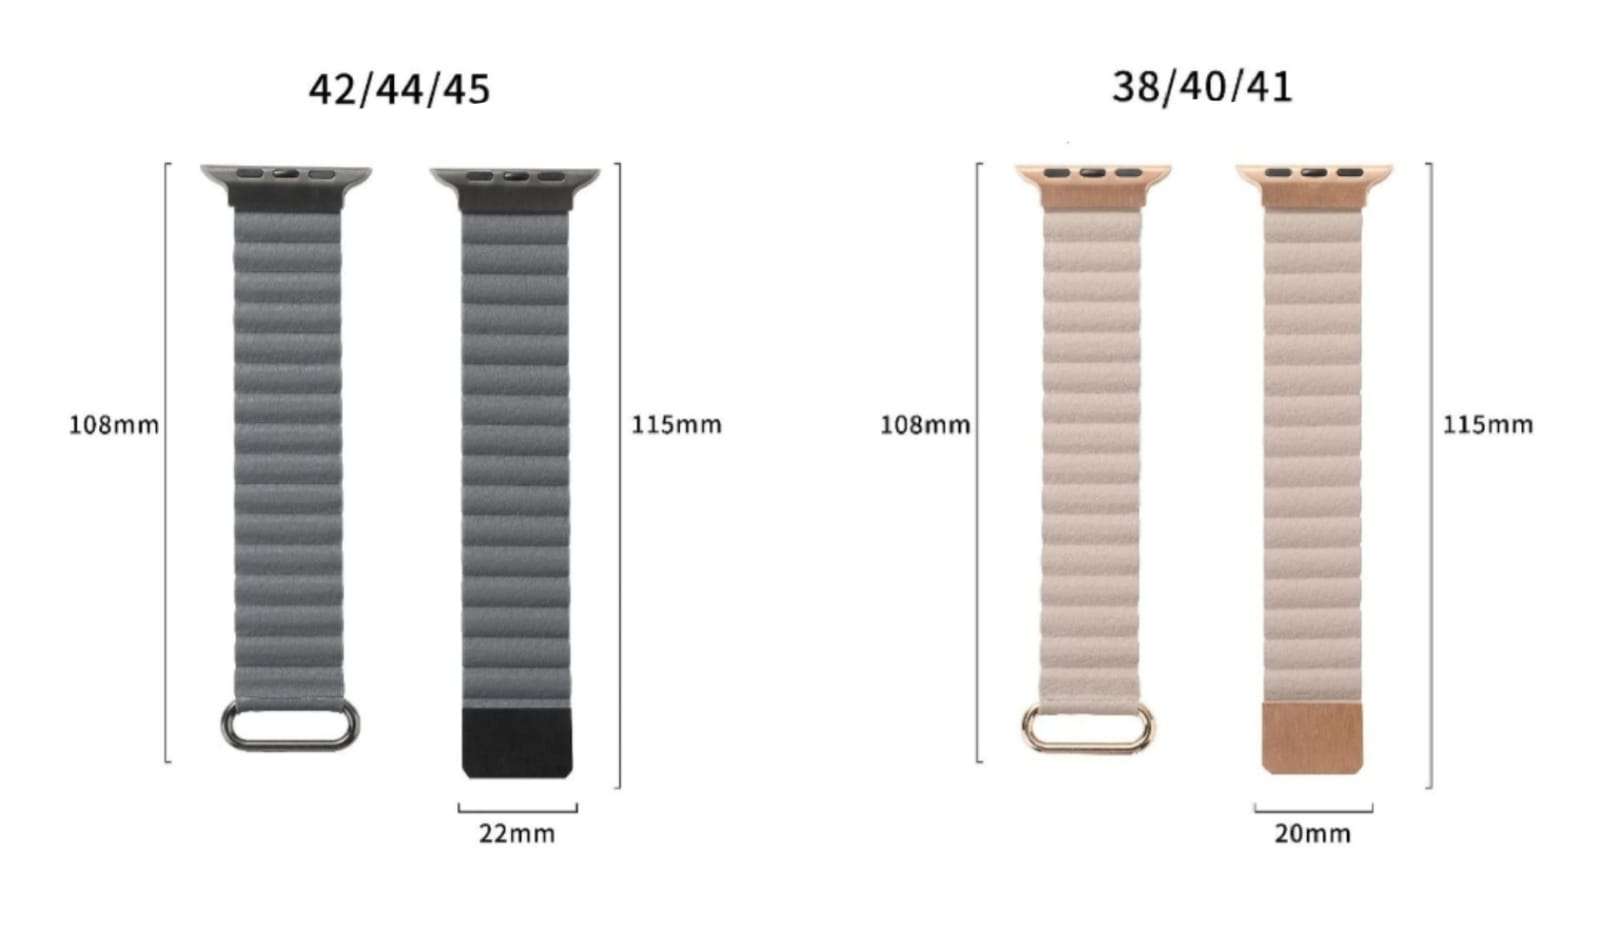 Ultra Luxury Leather Magnetic Band - 38/40/41 MM - Khaki